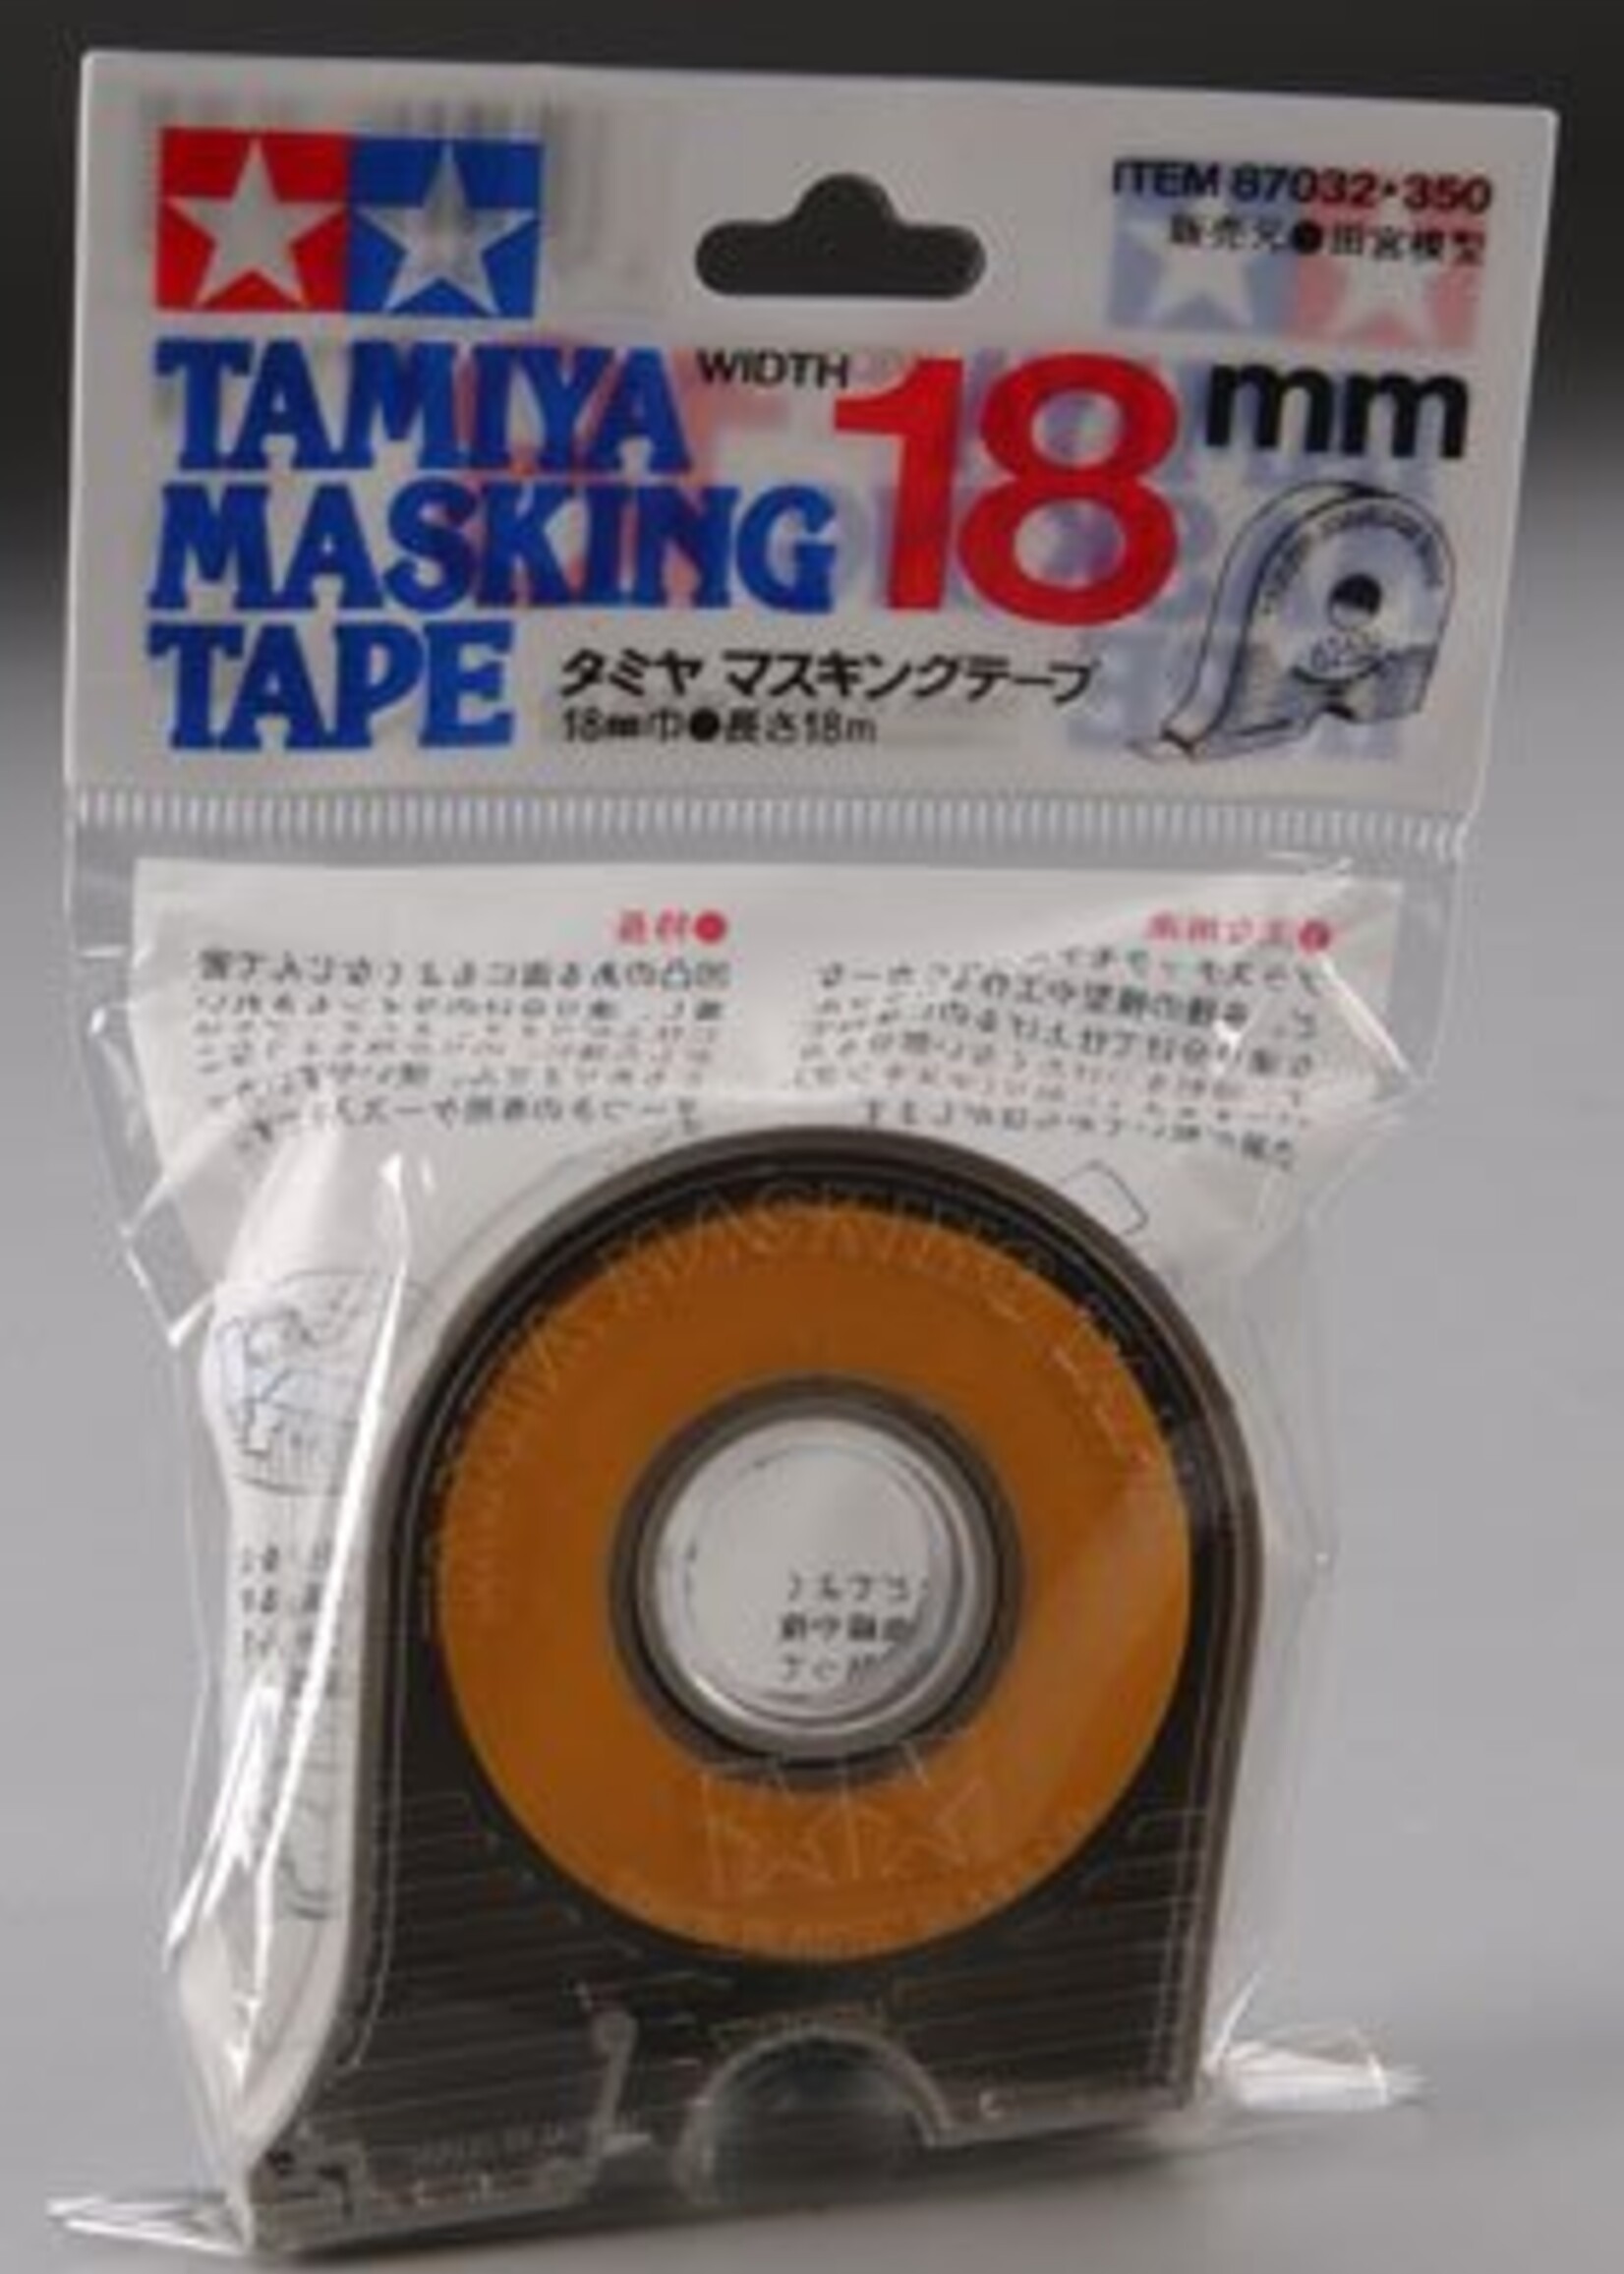 Tamiya (TAM) 865- TAM87032  Masking Tape 18mm with dispenser *